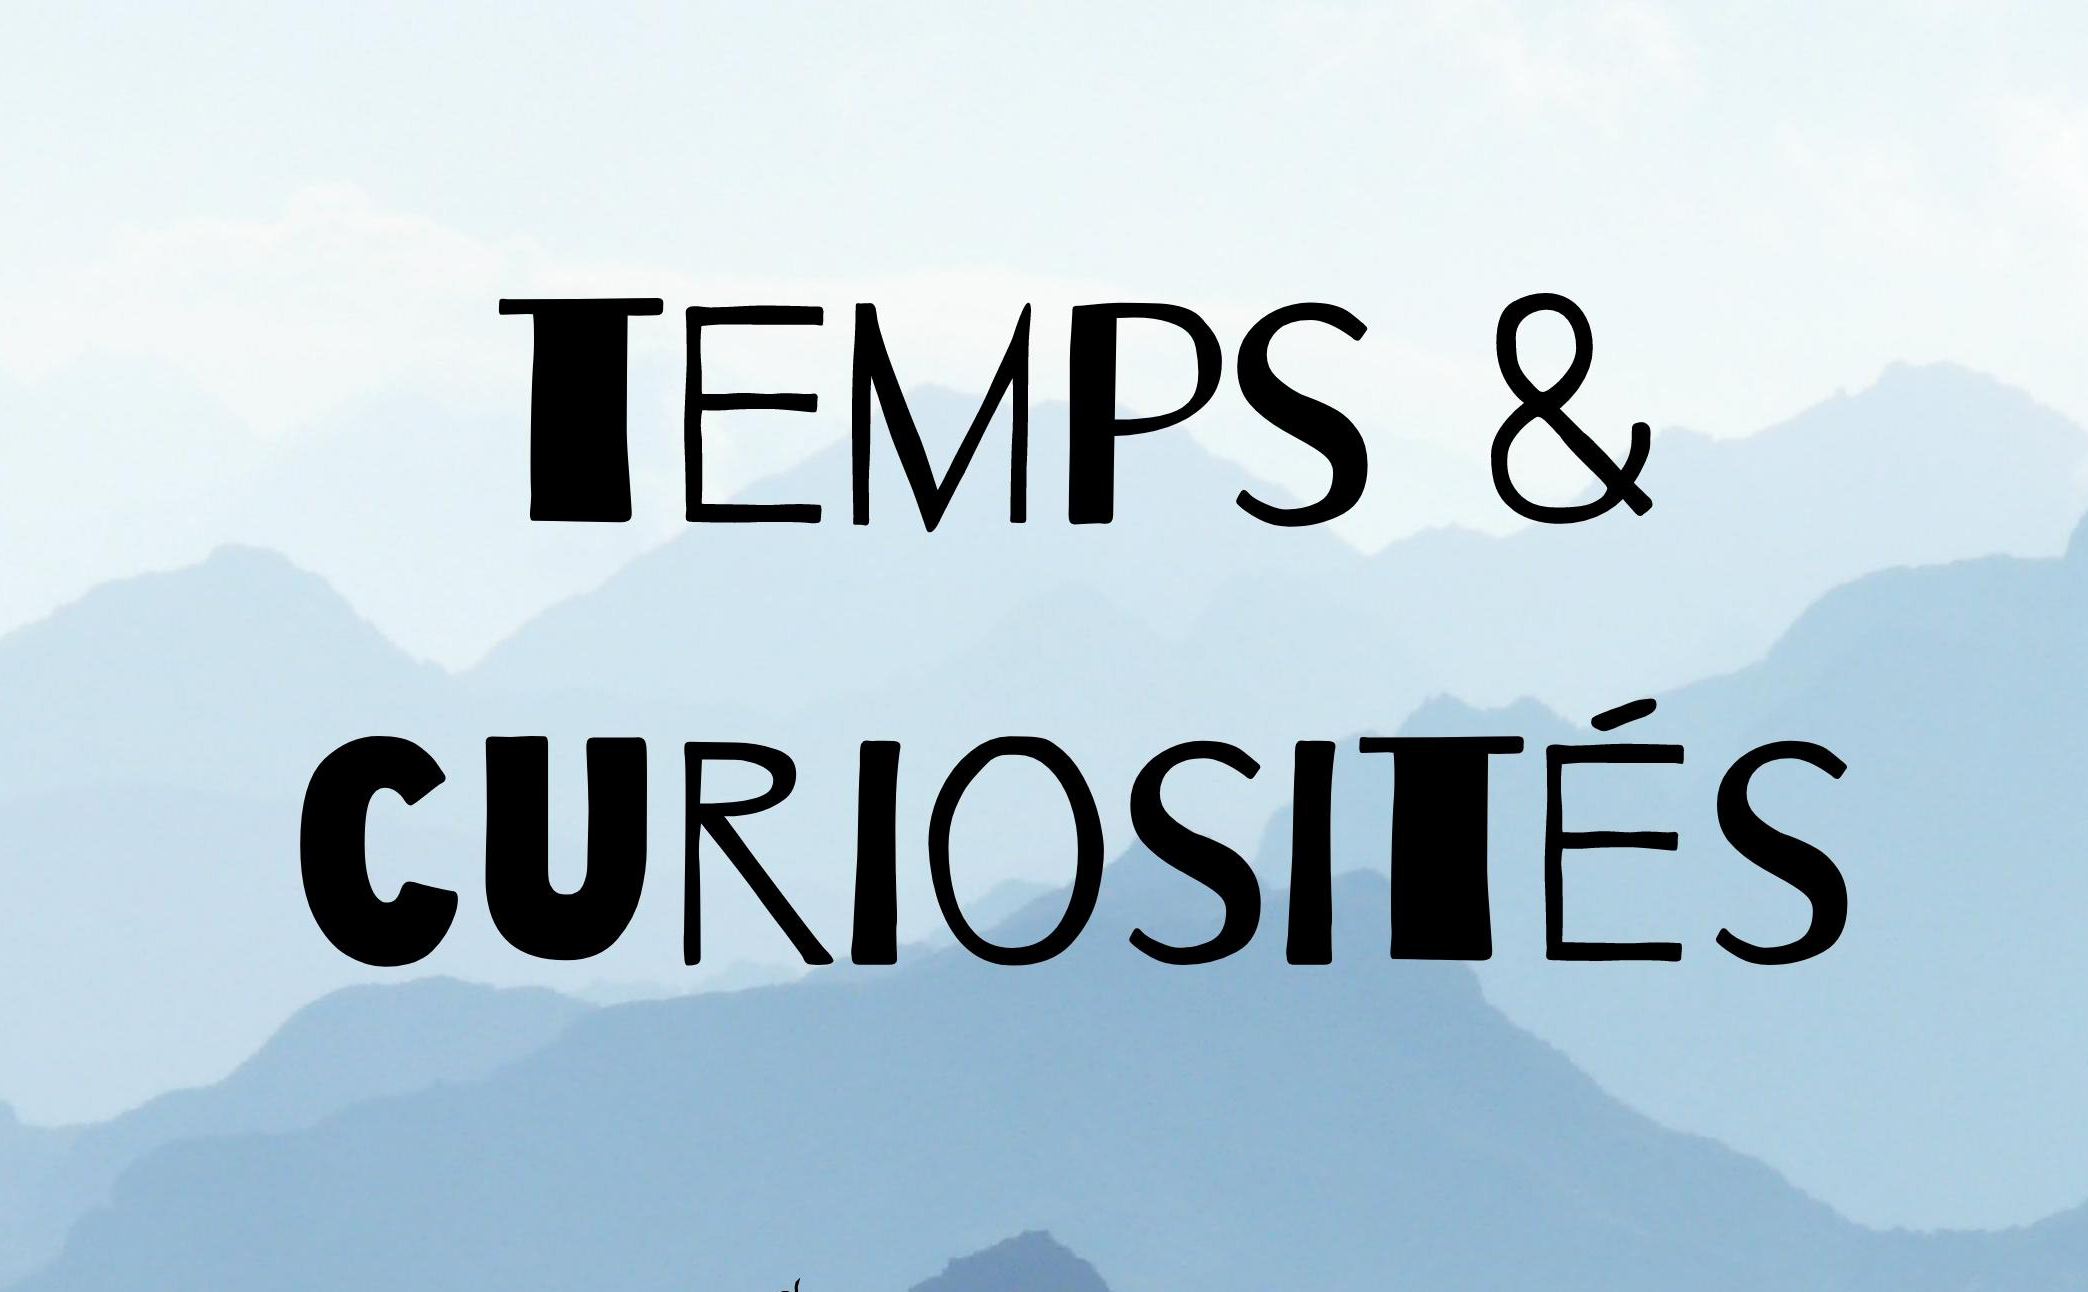 Temps & curiosités